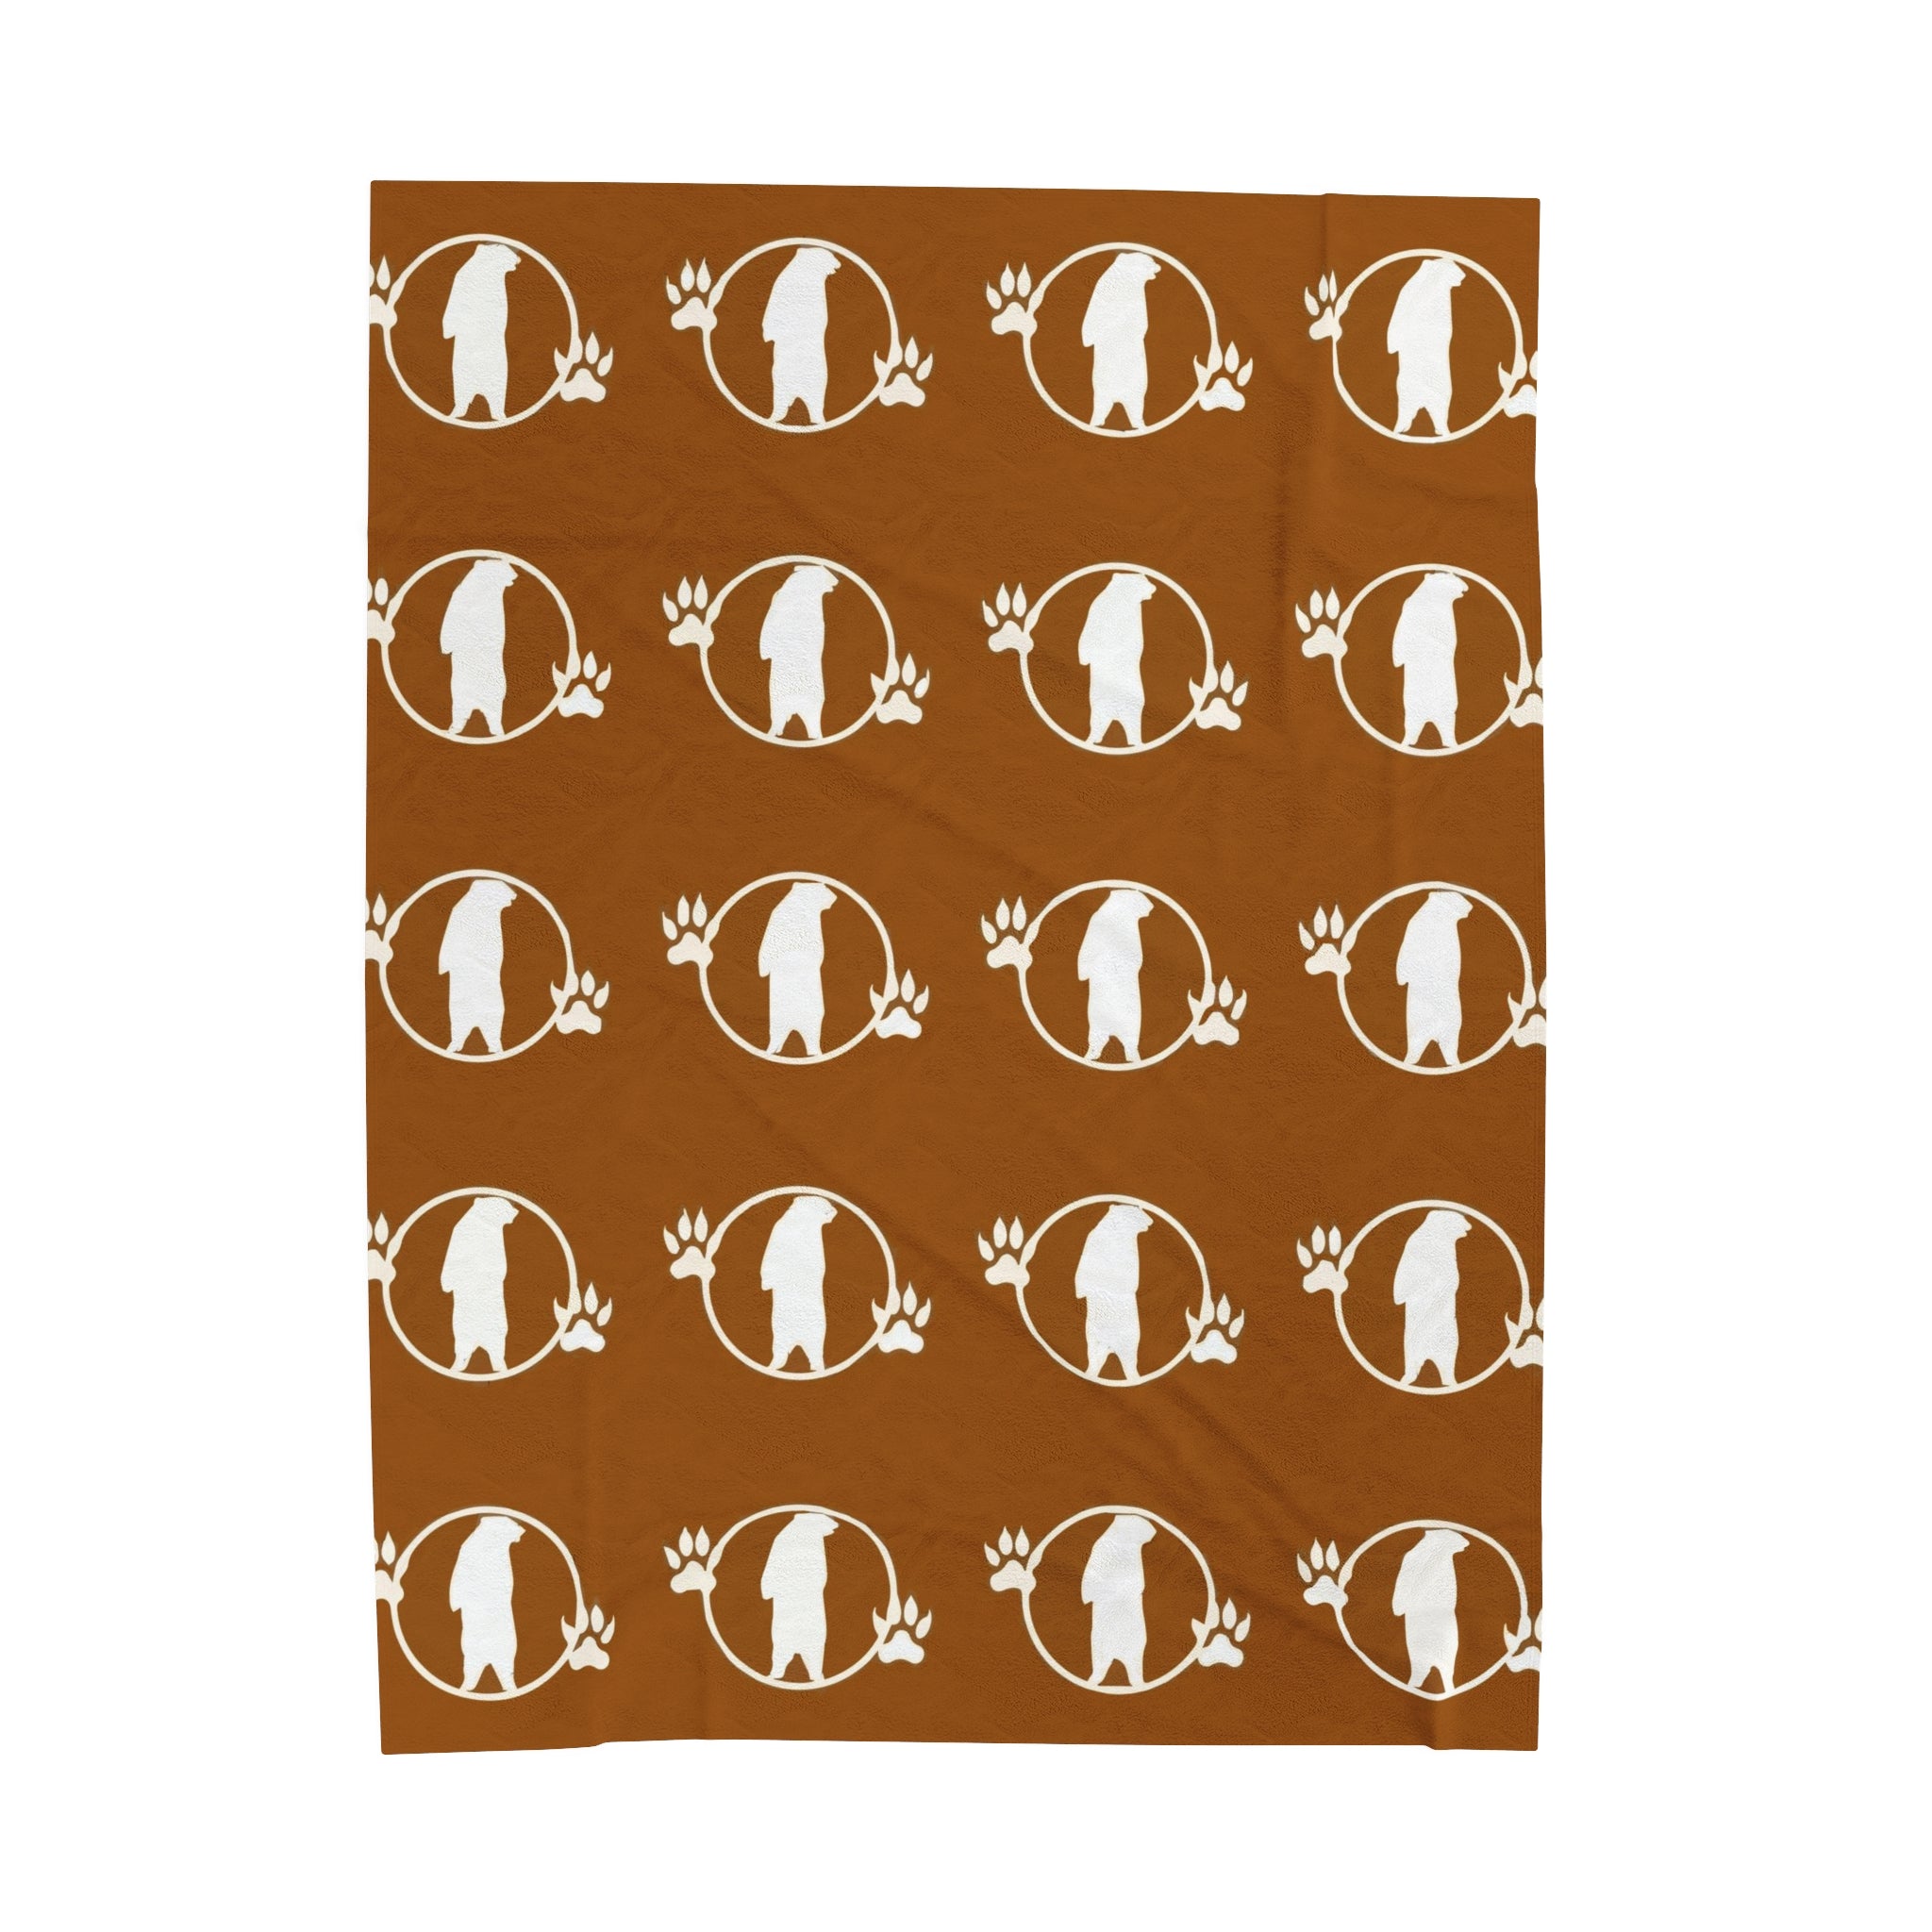 Manta de felpa de pana marrón con diseño de oso campestre